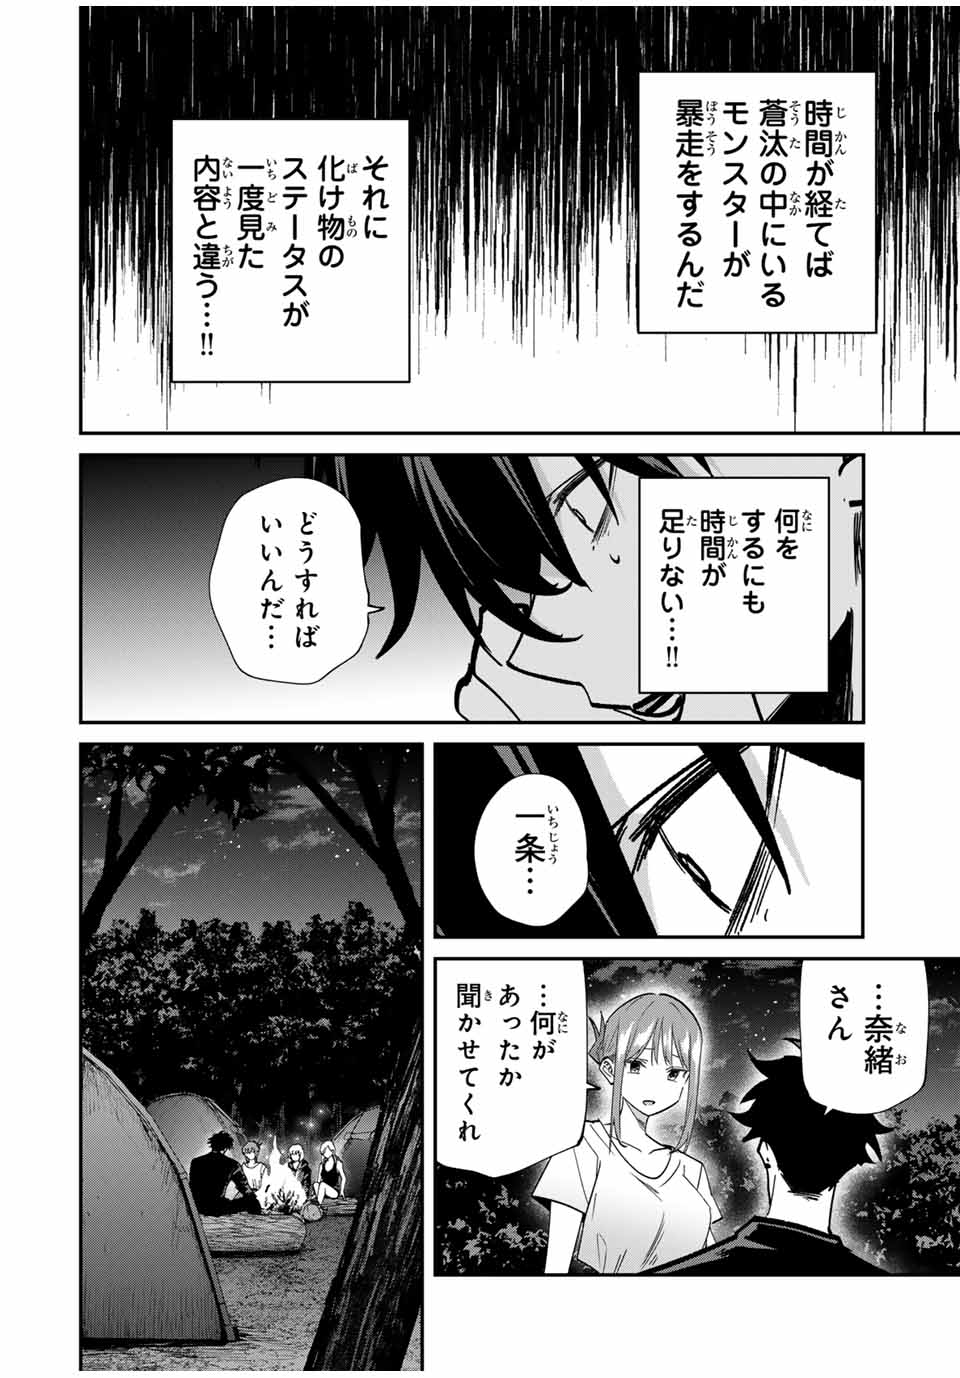 Kono Sekai ga Izure Horobu Koto wo, Ore dake ga Shitte Iru - Chapter 79 - Page 2